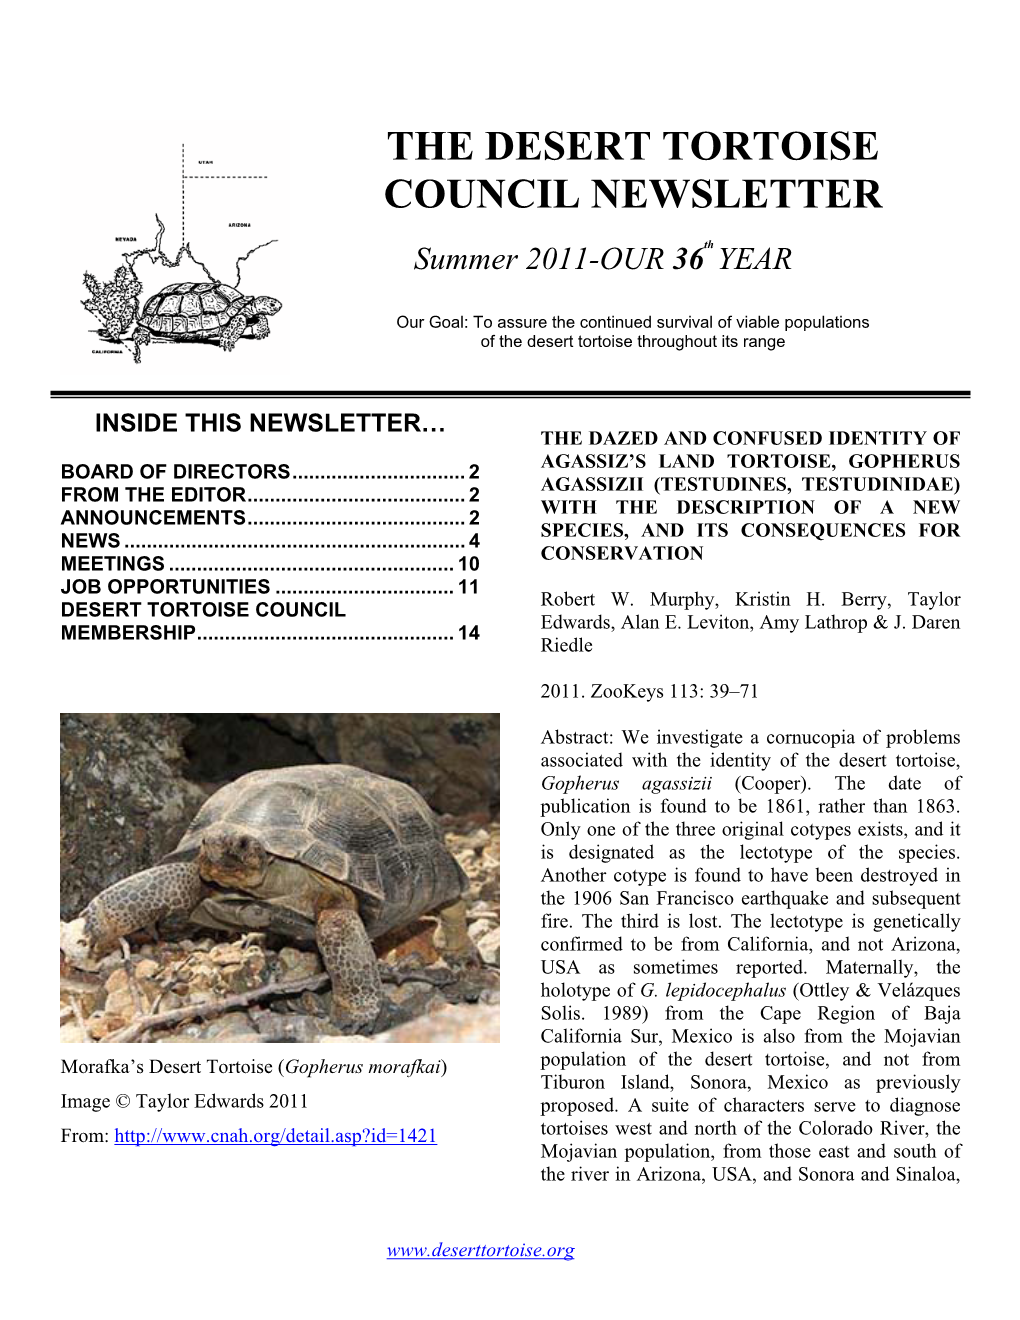 The Desert Tortoise Council Newsletter